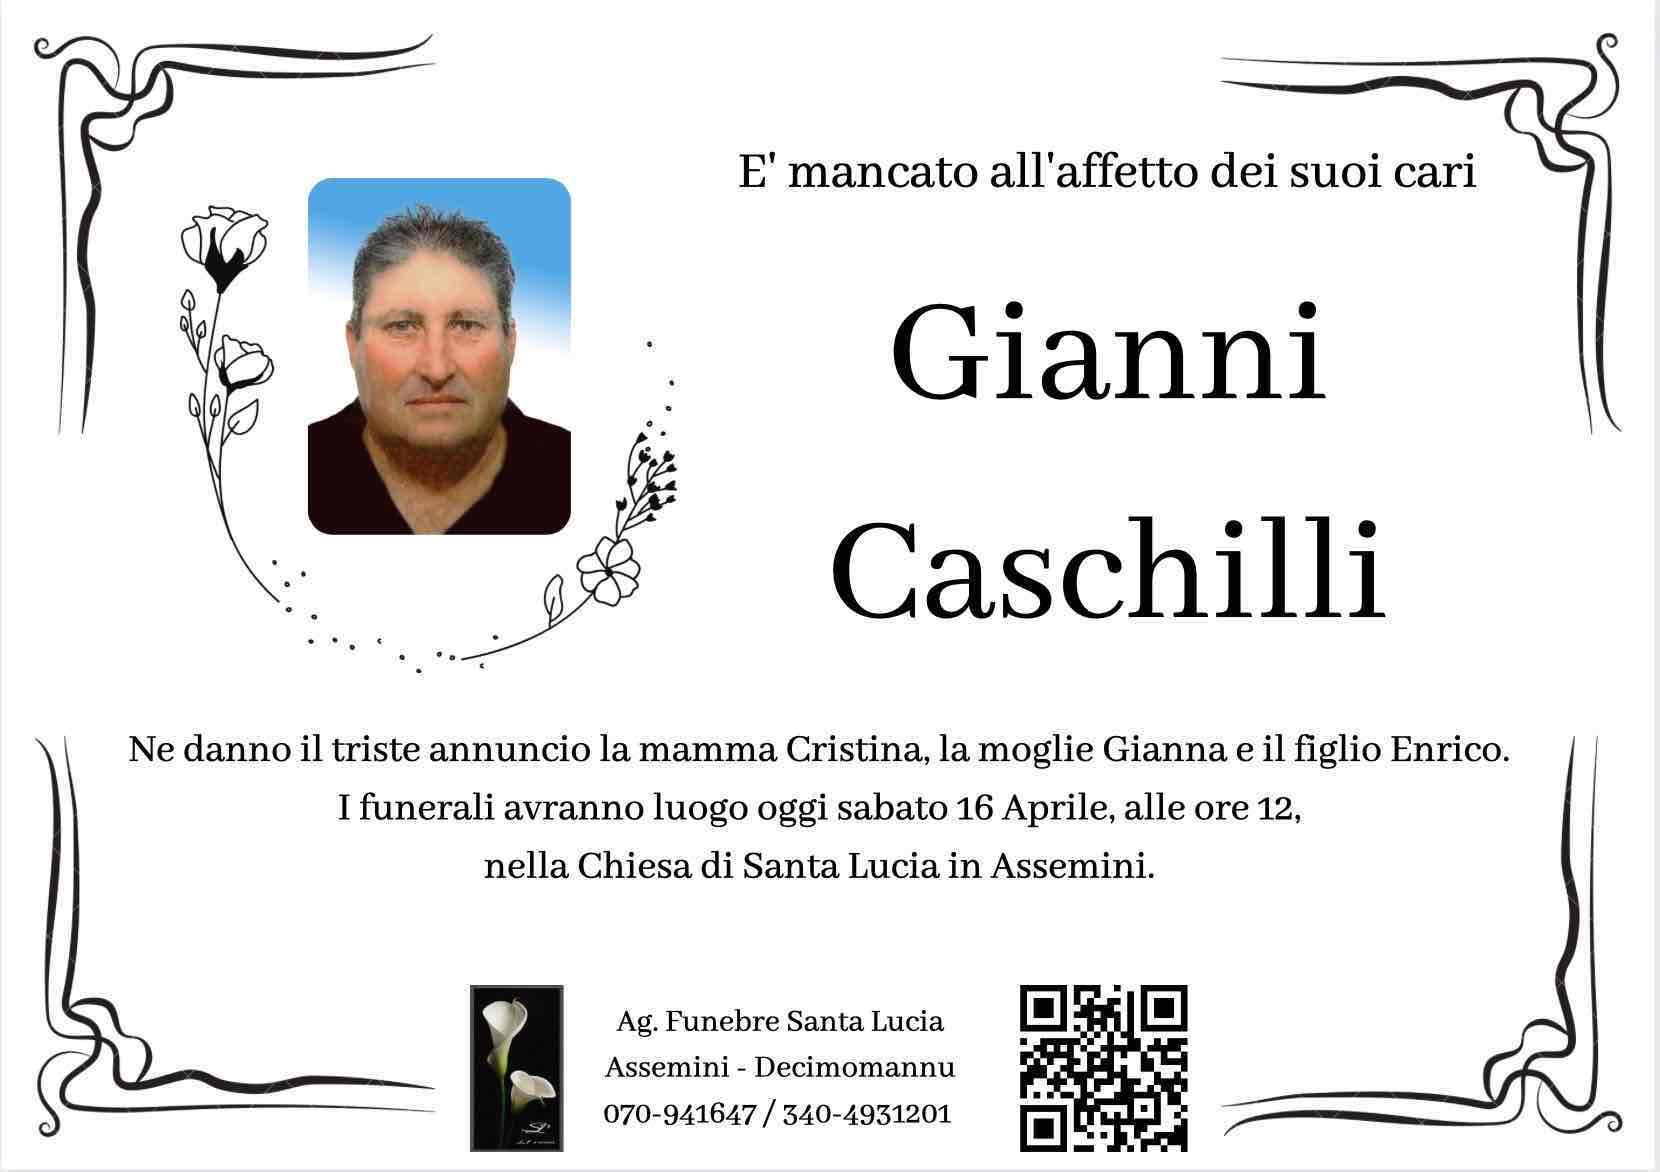 Gianni Caschilli